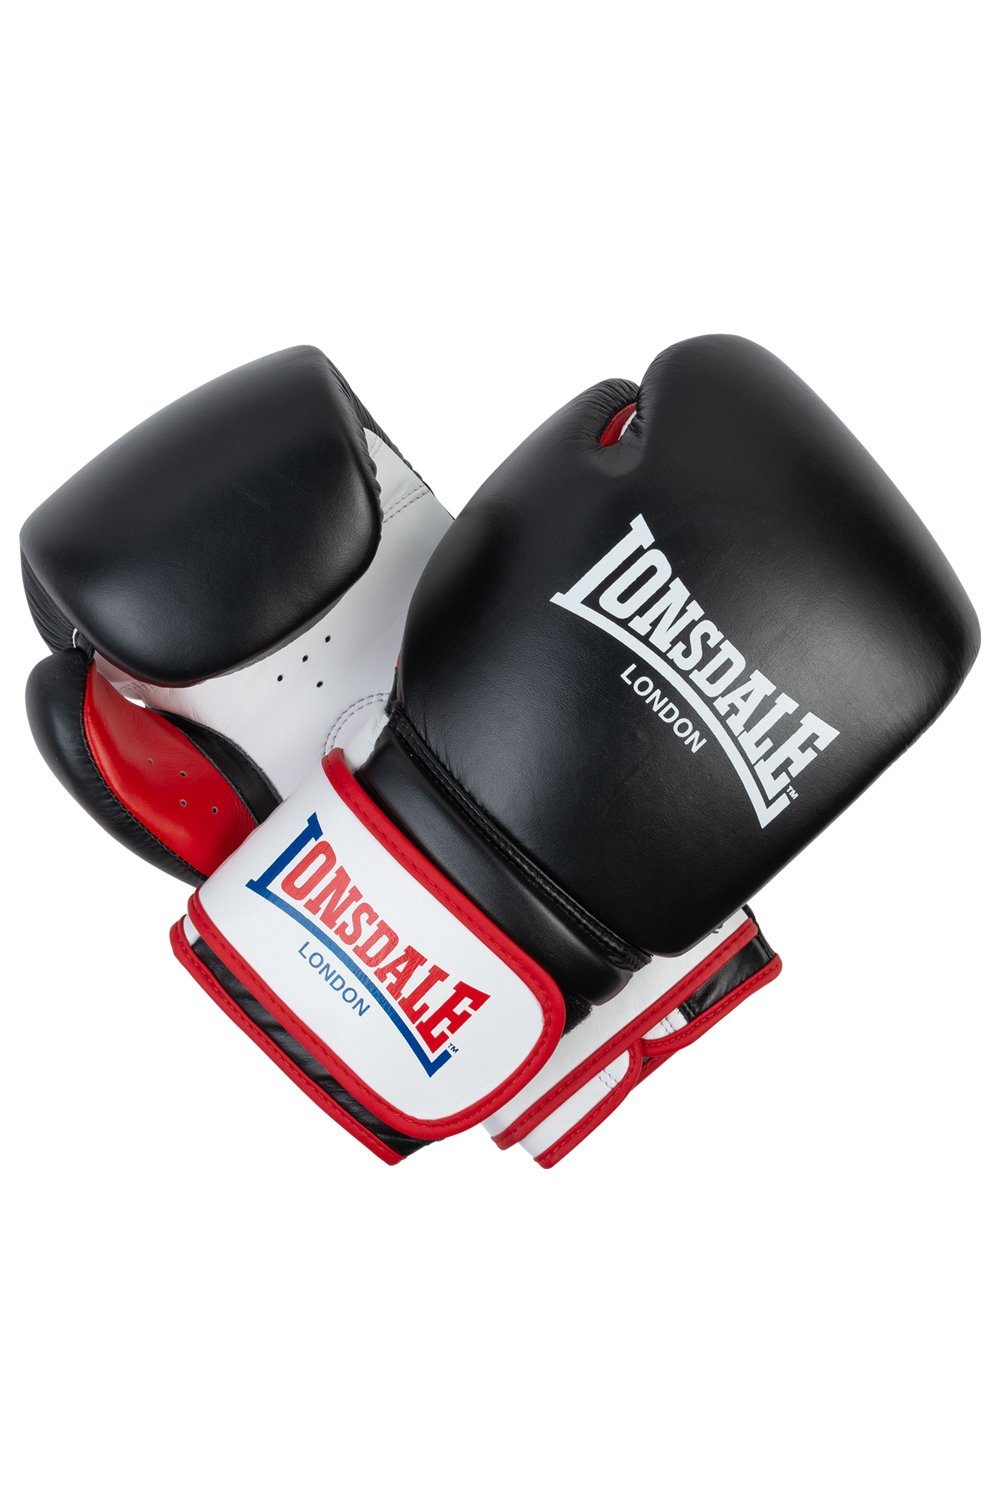 Lonsdale Boxhandschuhe »WINSTONE«, Hochwertige Boxhandschuhe von Lonsdale  online kaufen | OTTO